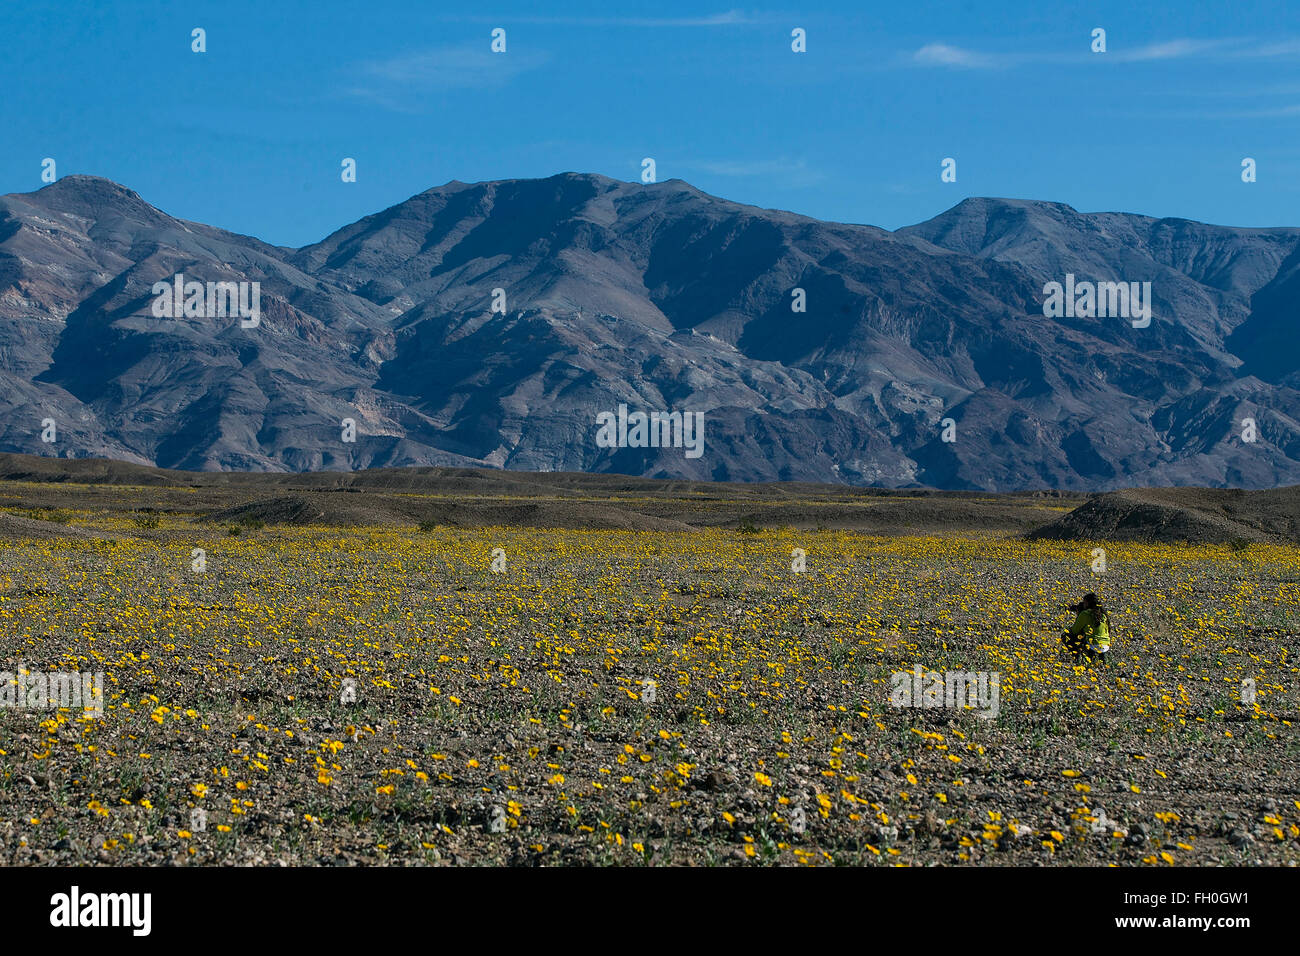 Ein Fotograf schießt auf ein Gebiet der Wüste Gold (Geraea Canescens) Wildblumen am 21. Februar 2016 in Death Valley Nationalpark, Kalifornien, Vereinigte Staaten von Amerika. Stockfoto